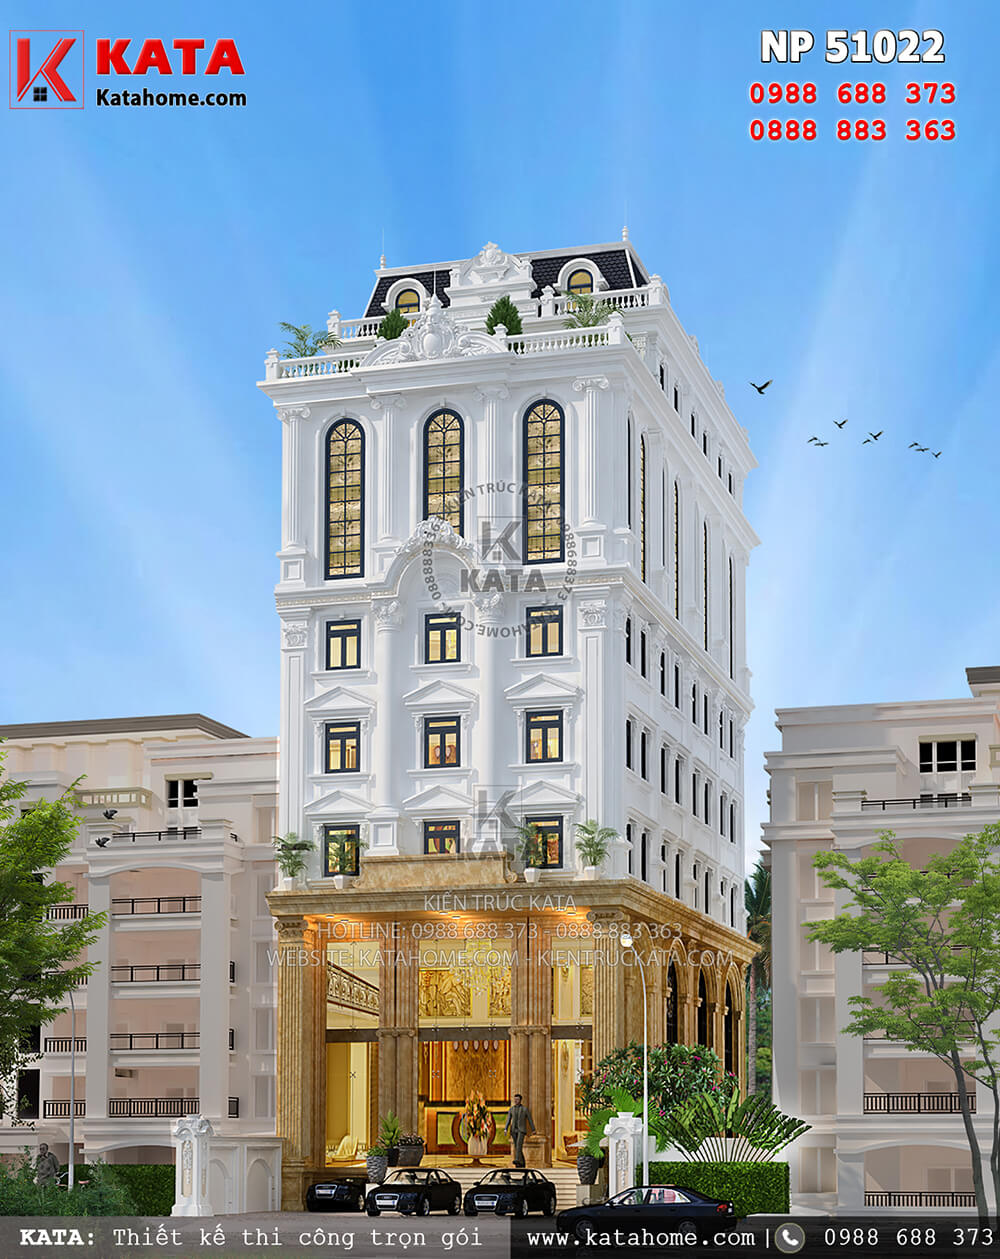 Một góc nhìn của mẫu khách sạn 5 tầng đạt tiêu chuẩn khách sạn 3 sao tại Tam Đảo